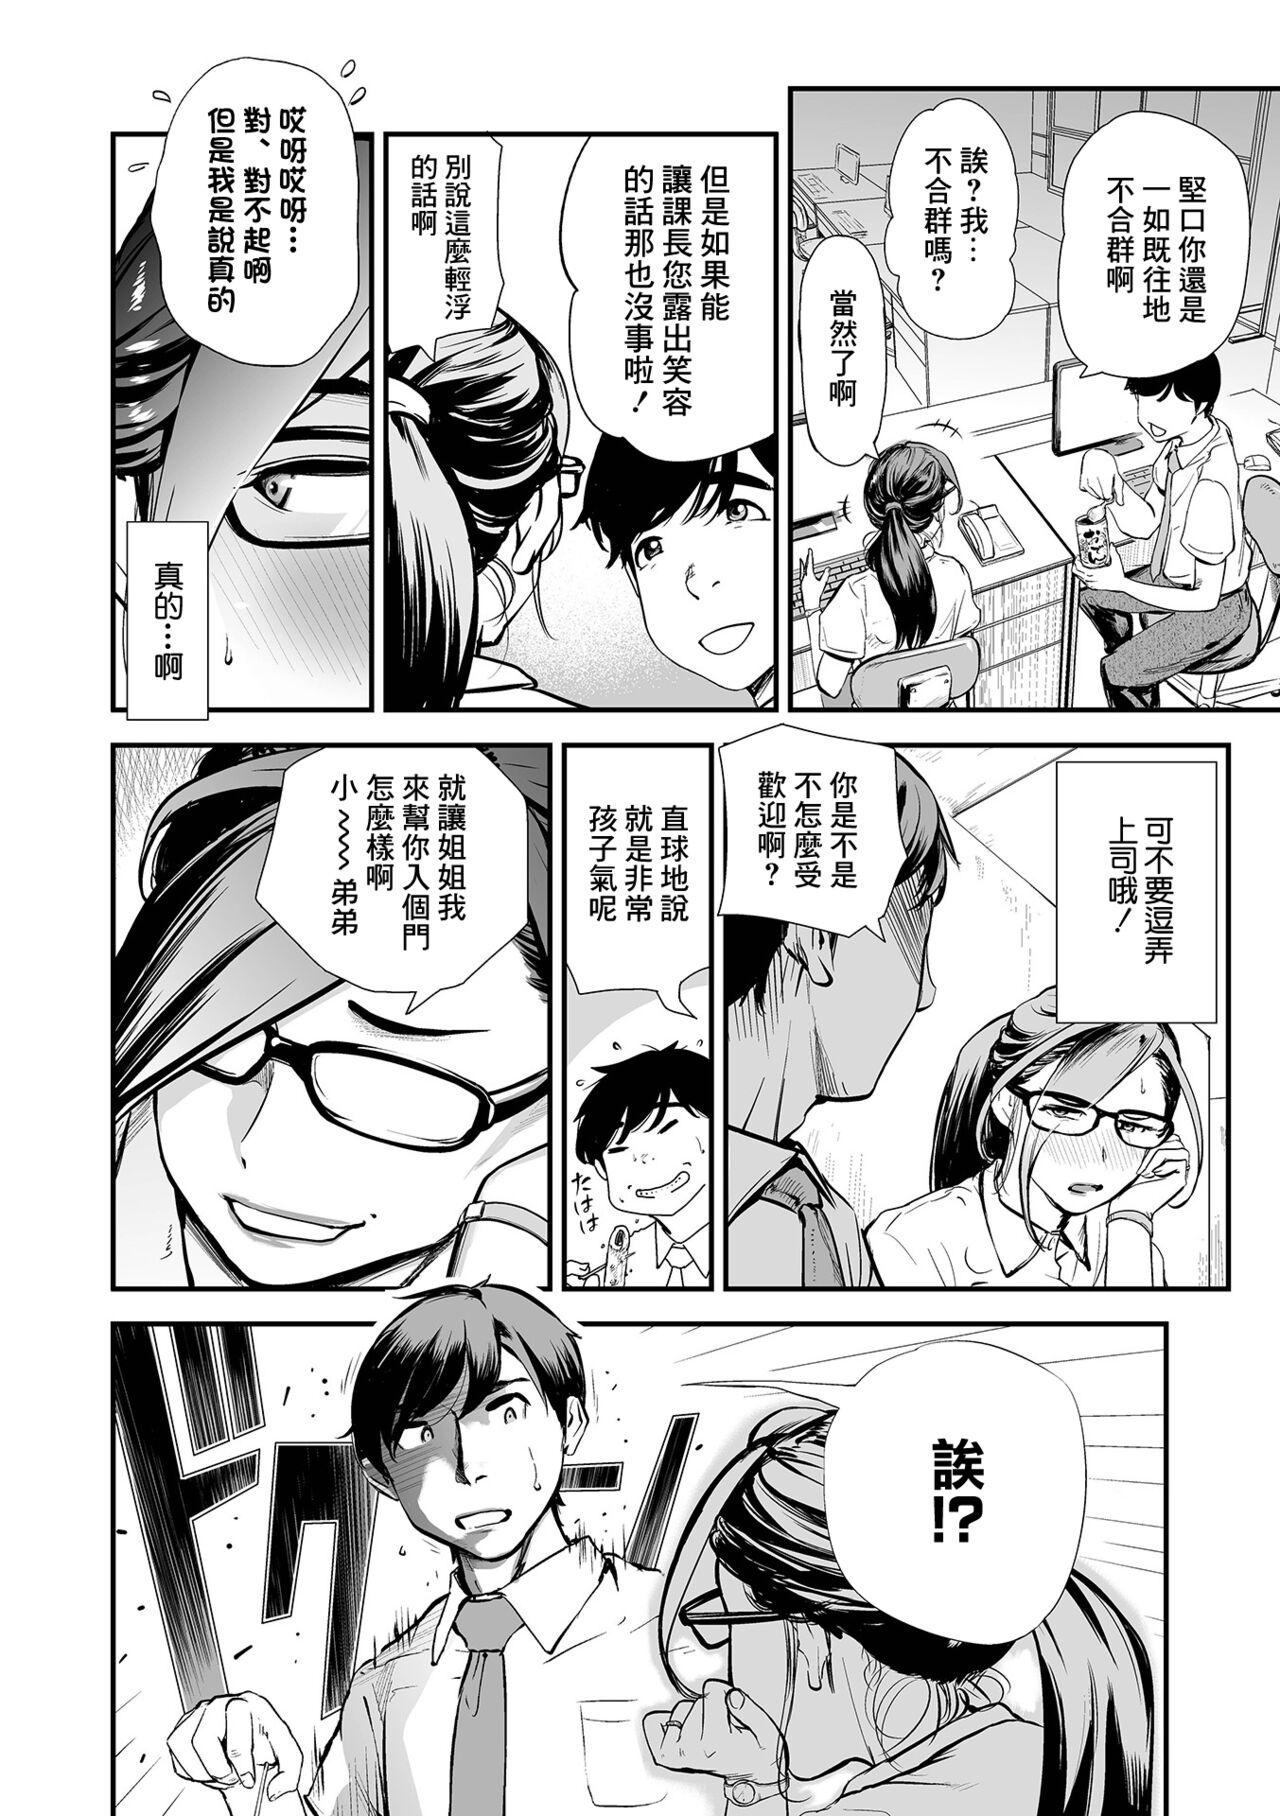 Piroca Daayama-san wa Maguro ja Nai!! Friends - Page 4